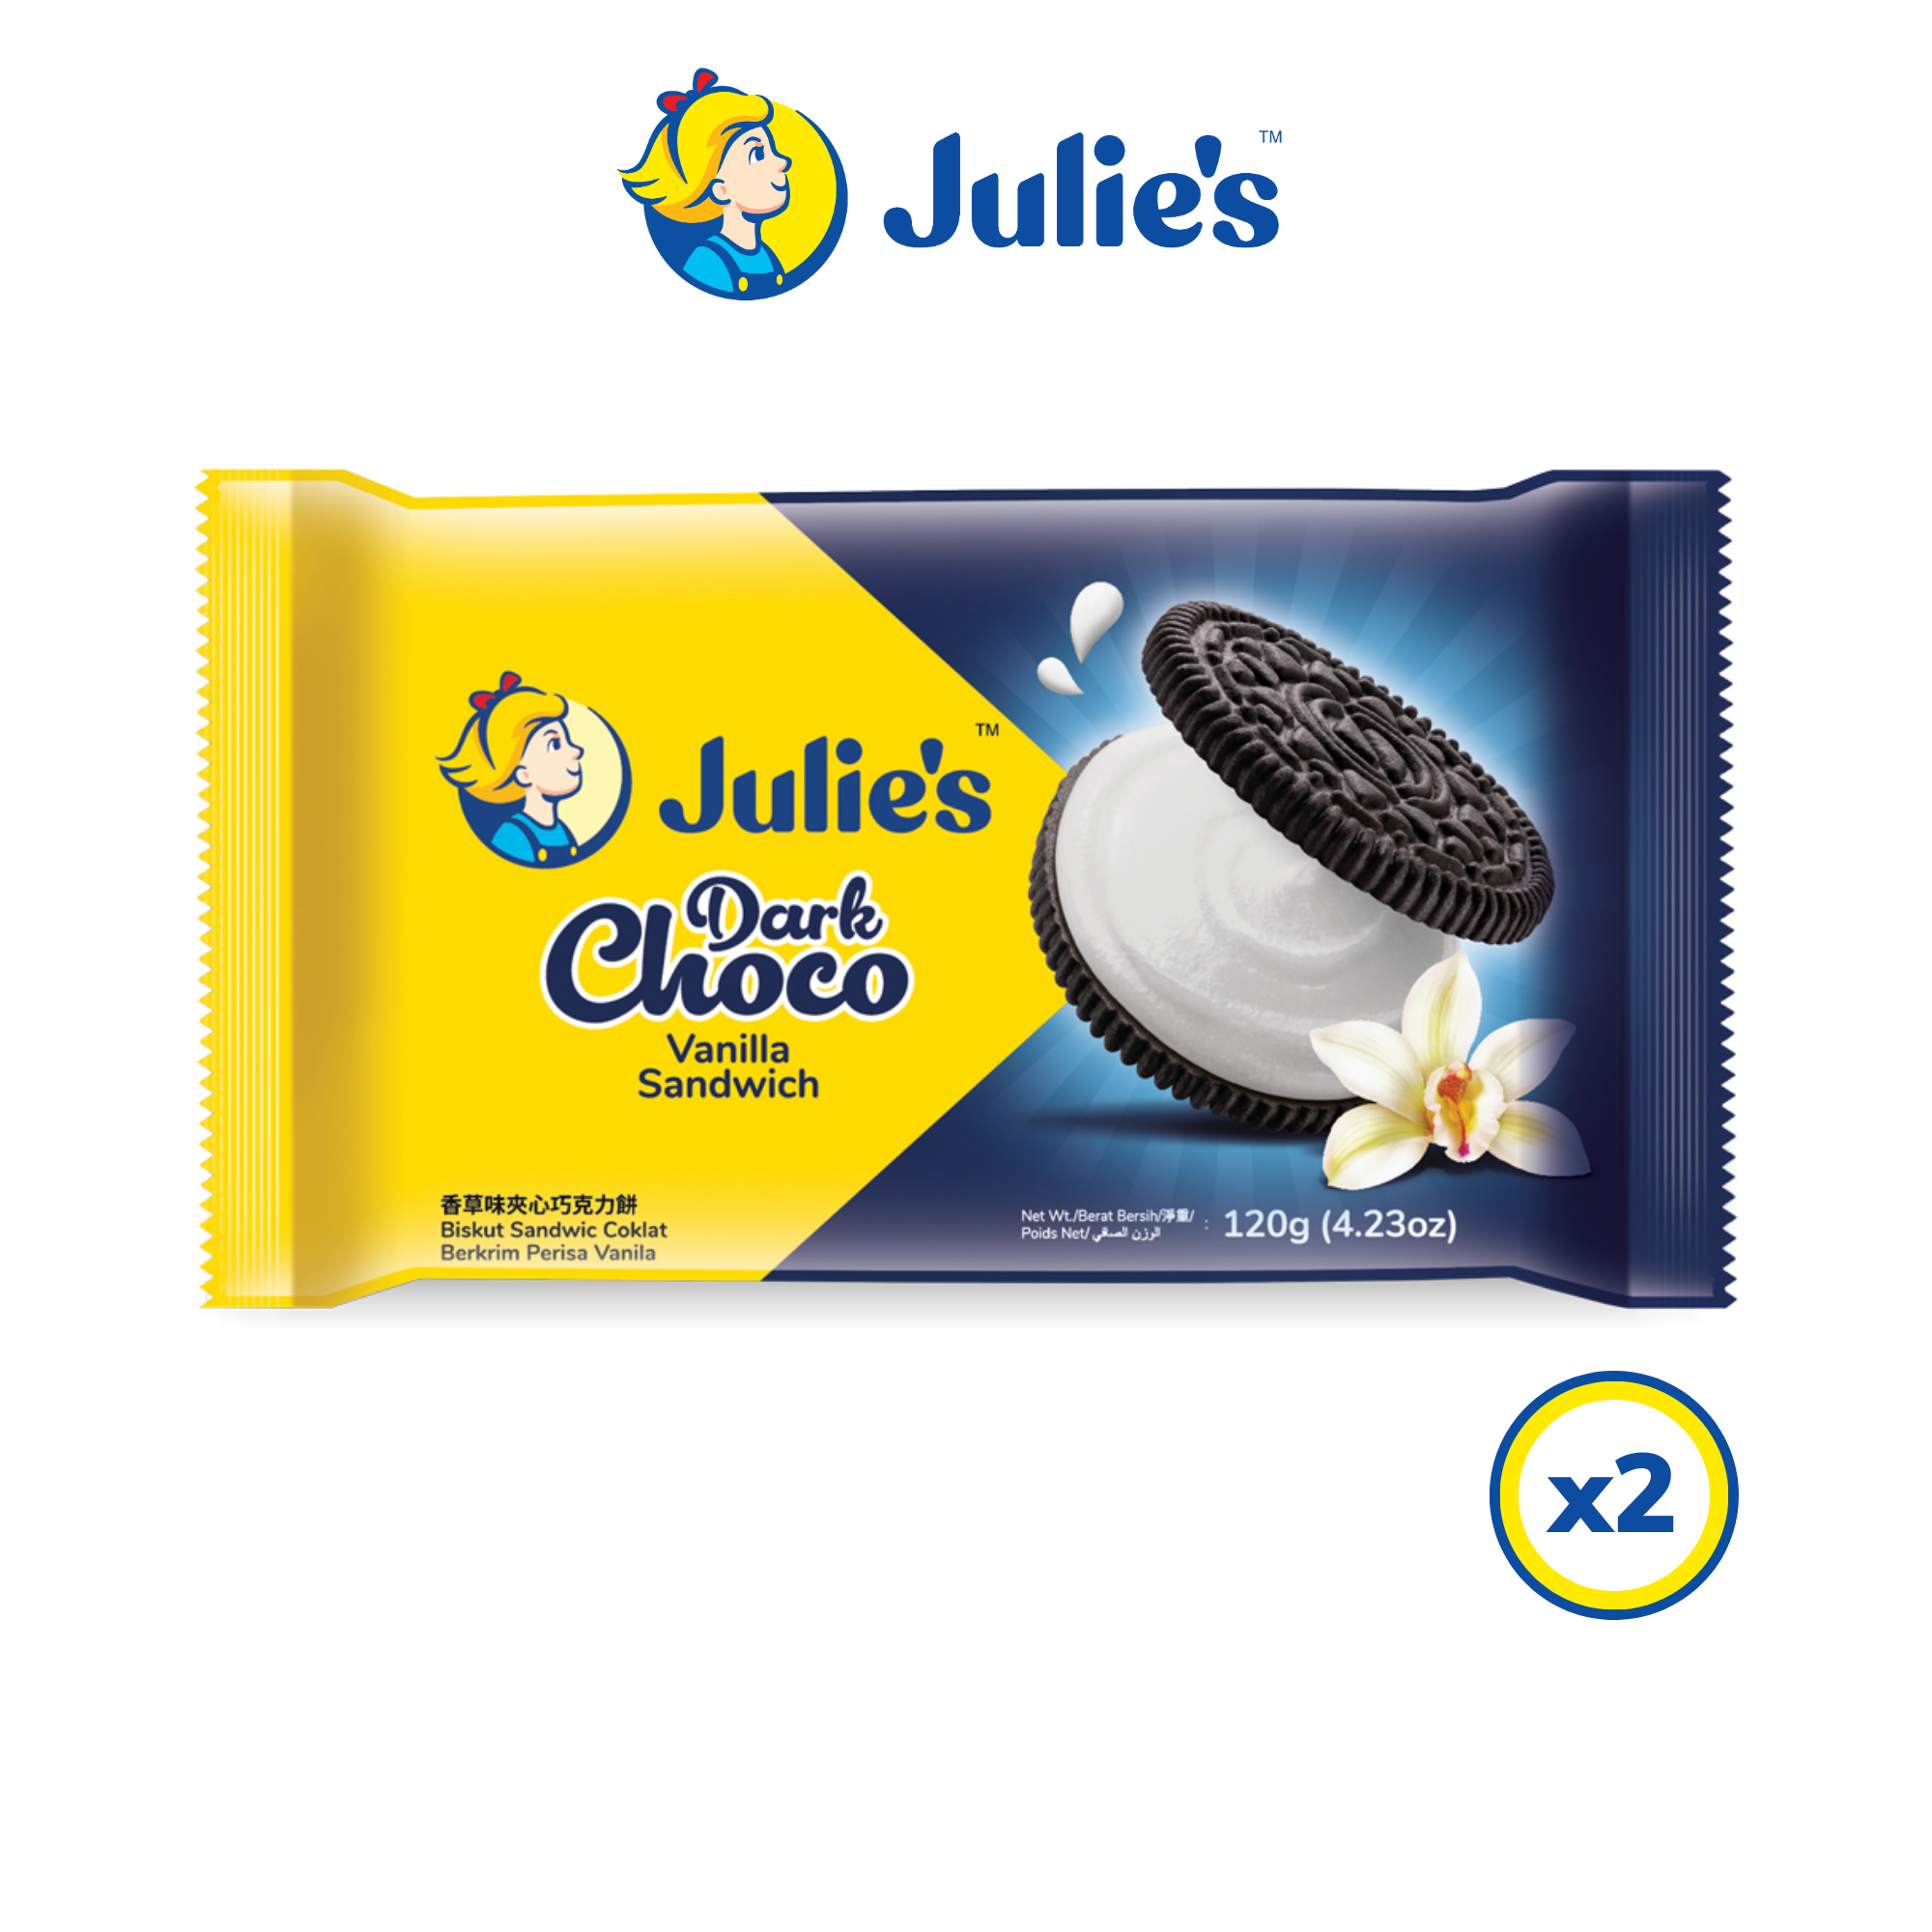 Julie\'s Dark Choco Vanilla Sandwich 120g x 2 packs